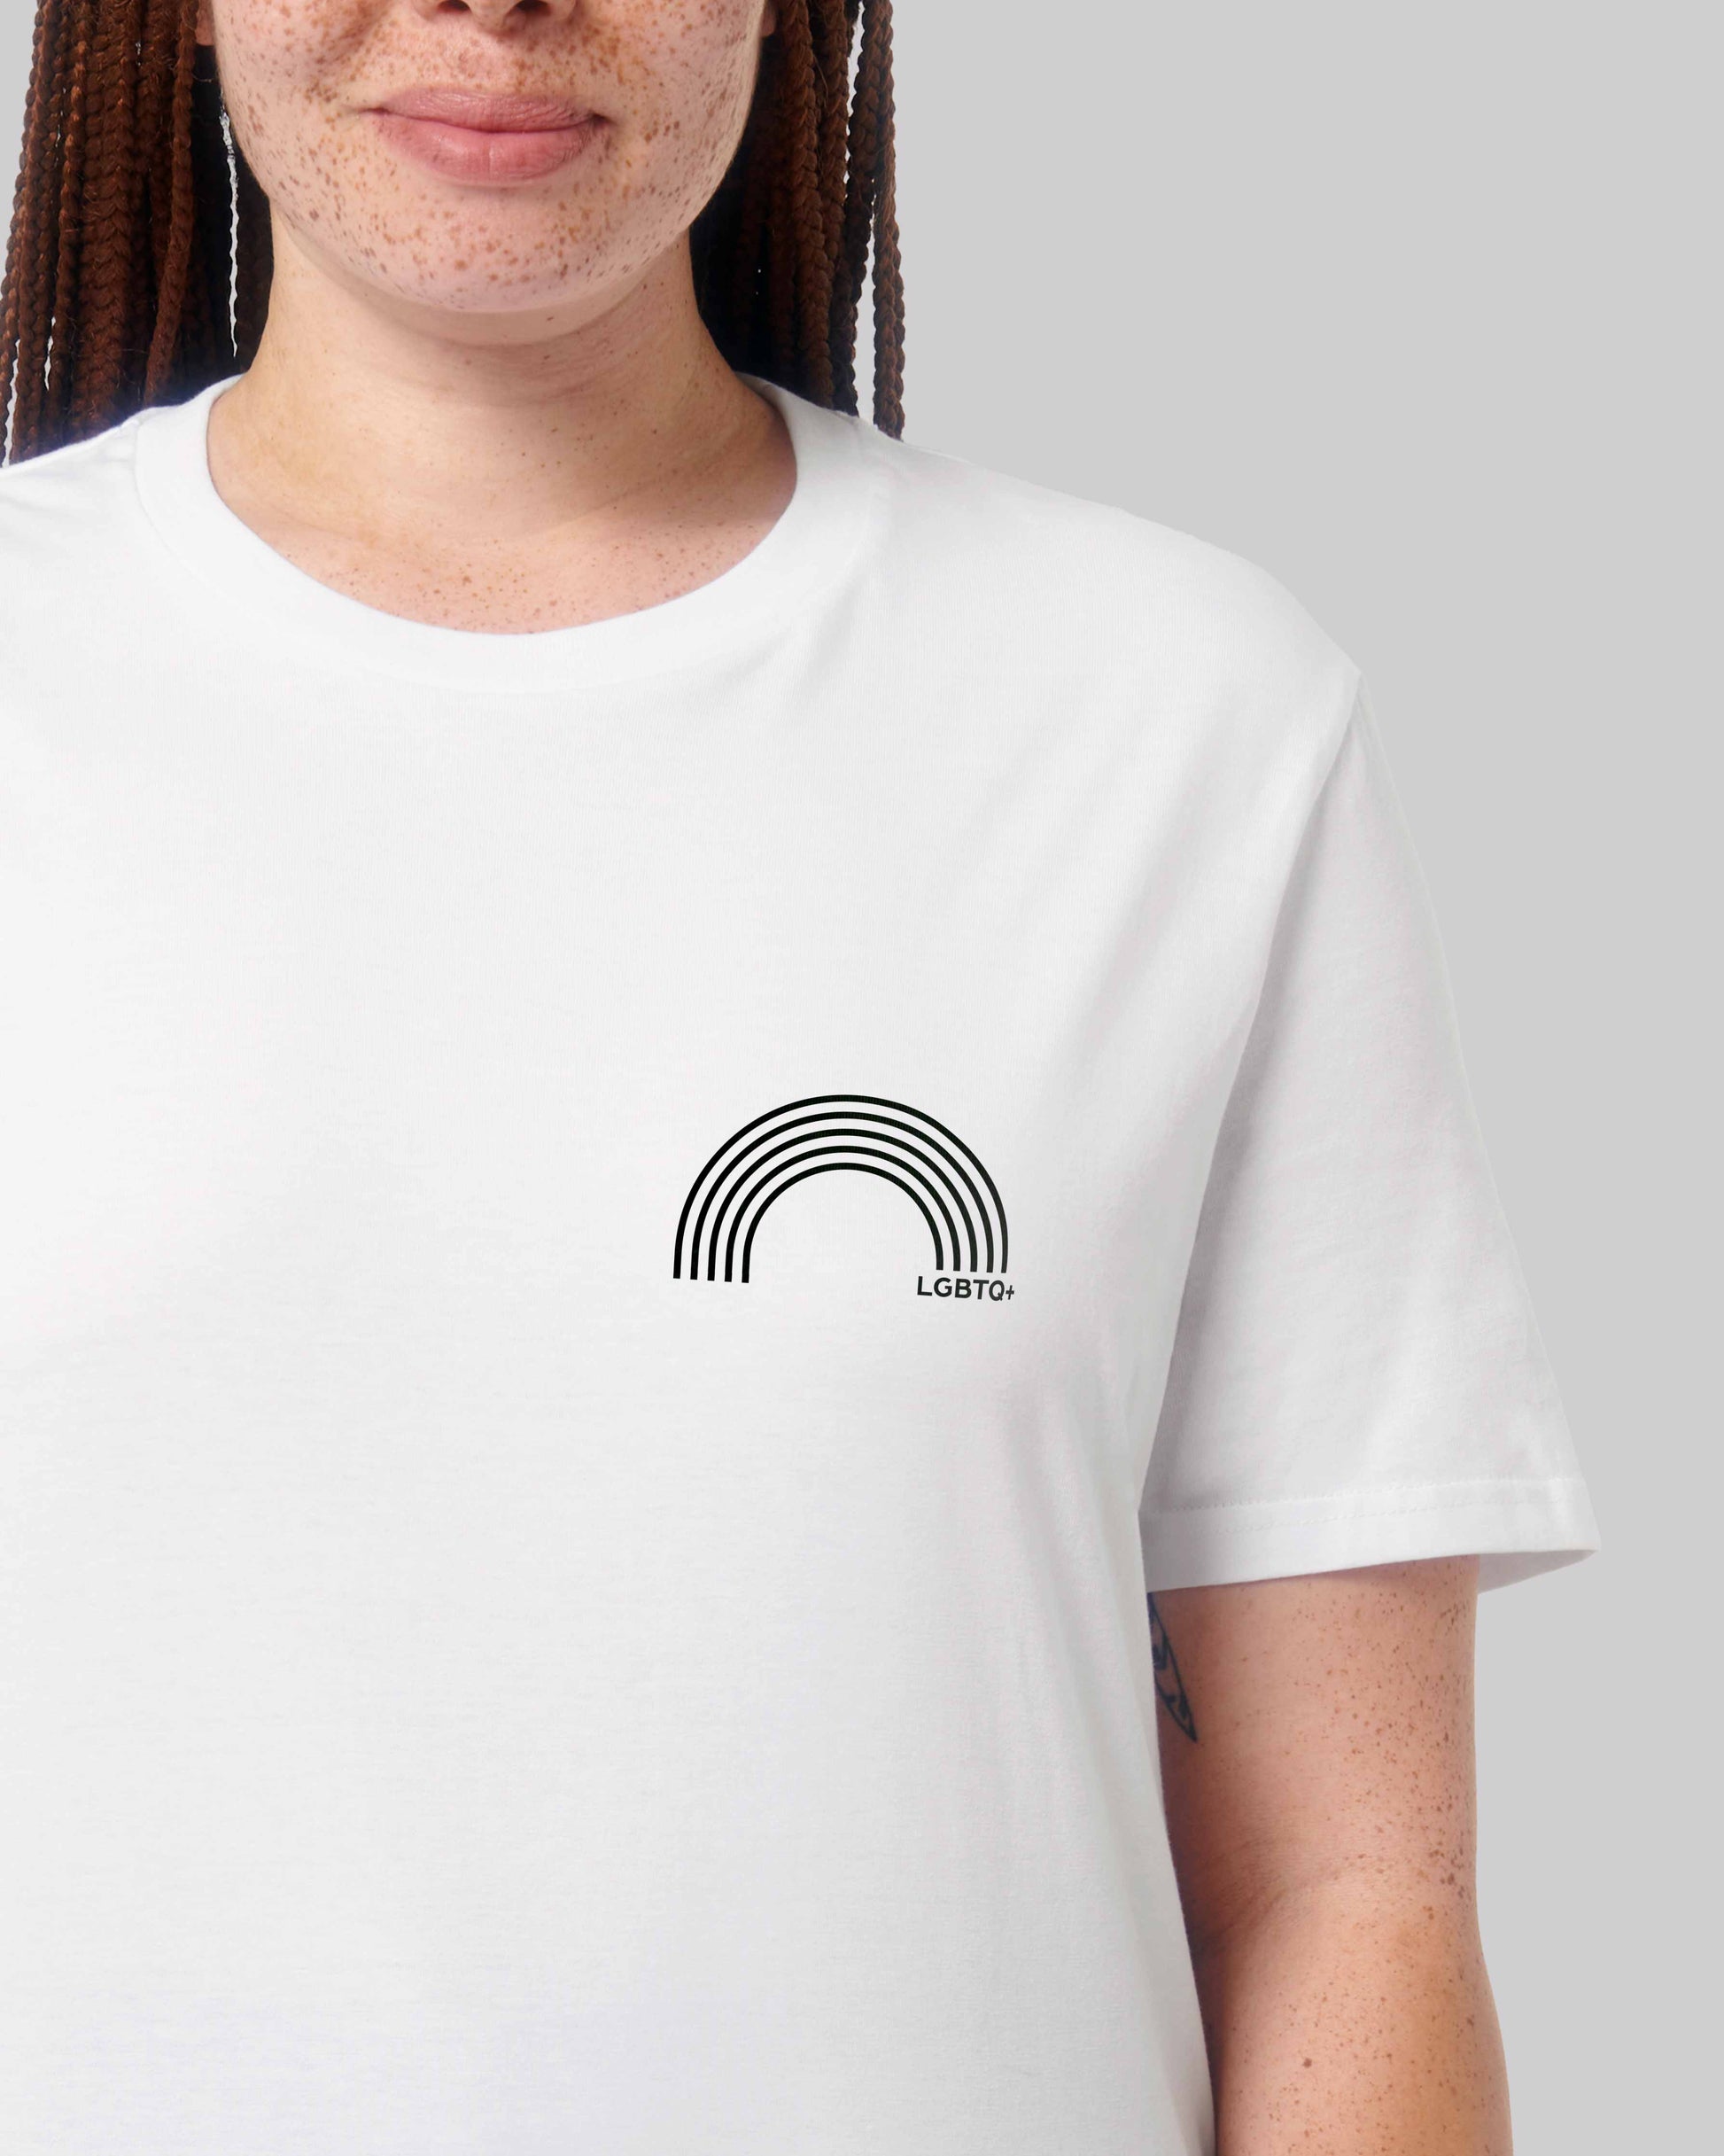 EINHORST® unisex Organic Shirt in Weiß mit dem Motiv "lgbtq+ Regenbogen" in der Kombination schwarzer Regenbogen mit schwarzer Schrift, Bild von weiblicher Person mit Shirt